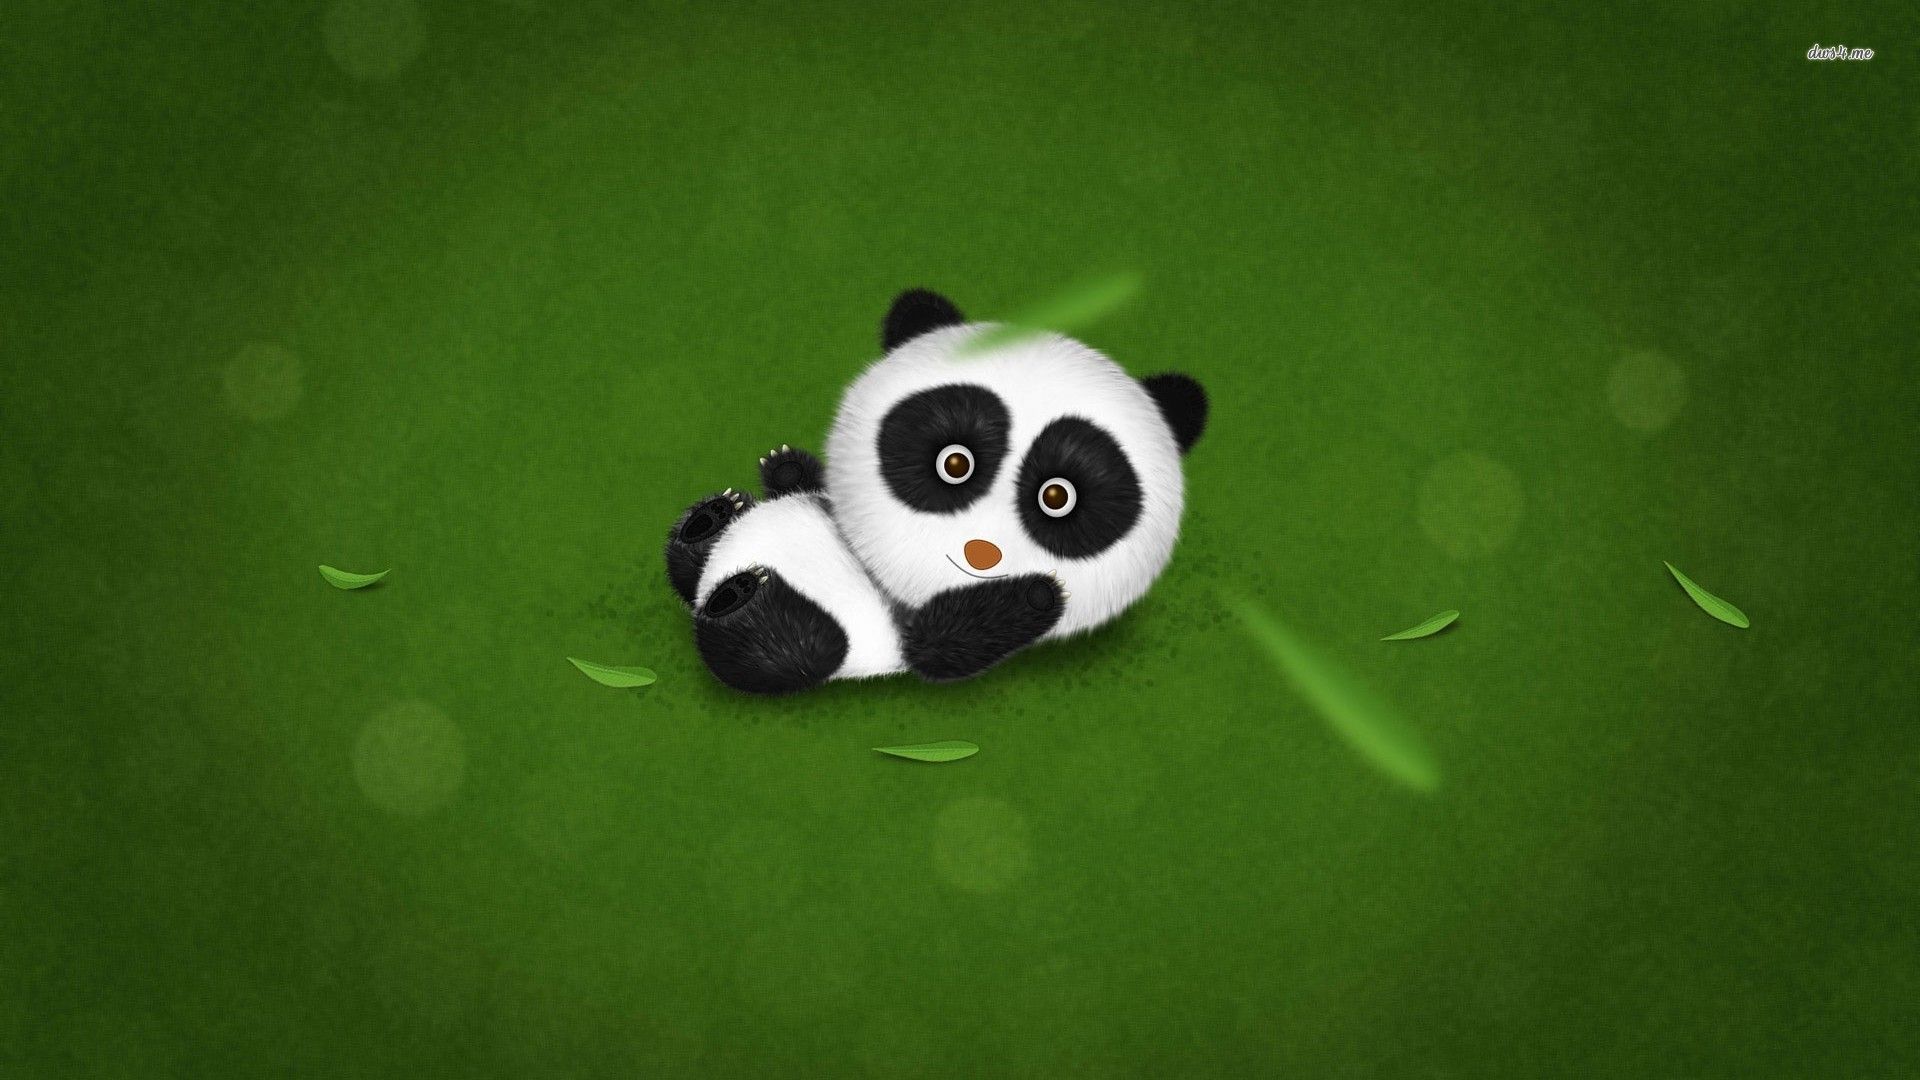 Baby panda wallpaper - Digital Art wallpapers - #10810